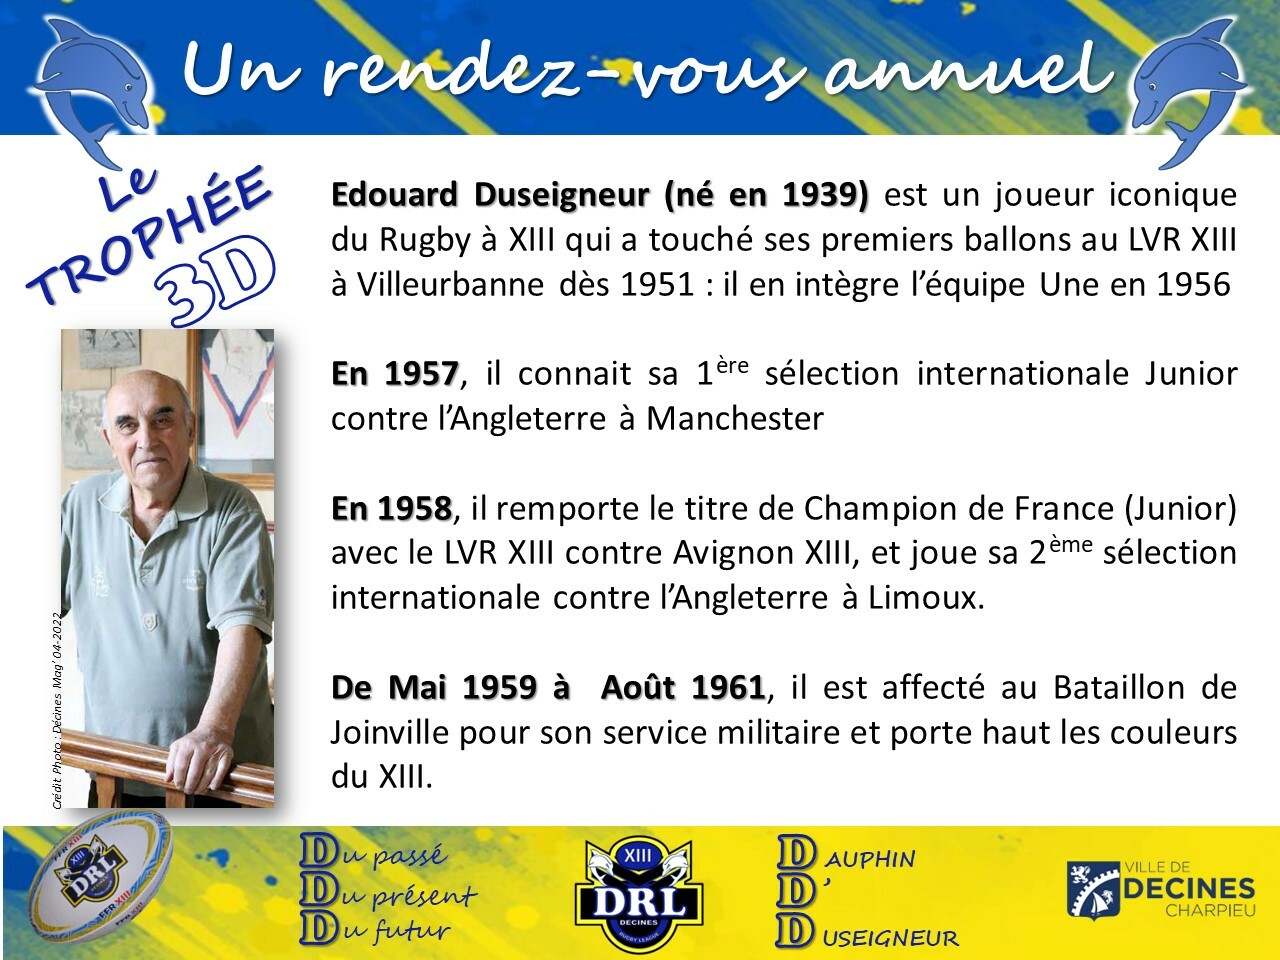 Trophée Dauphin D' DUSEIGNEUR